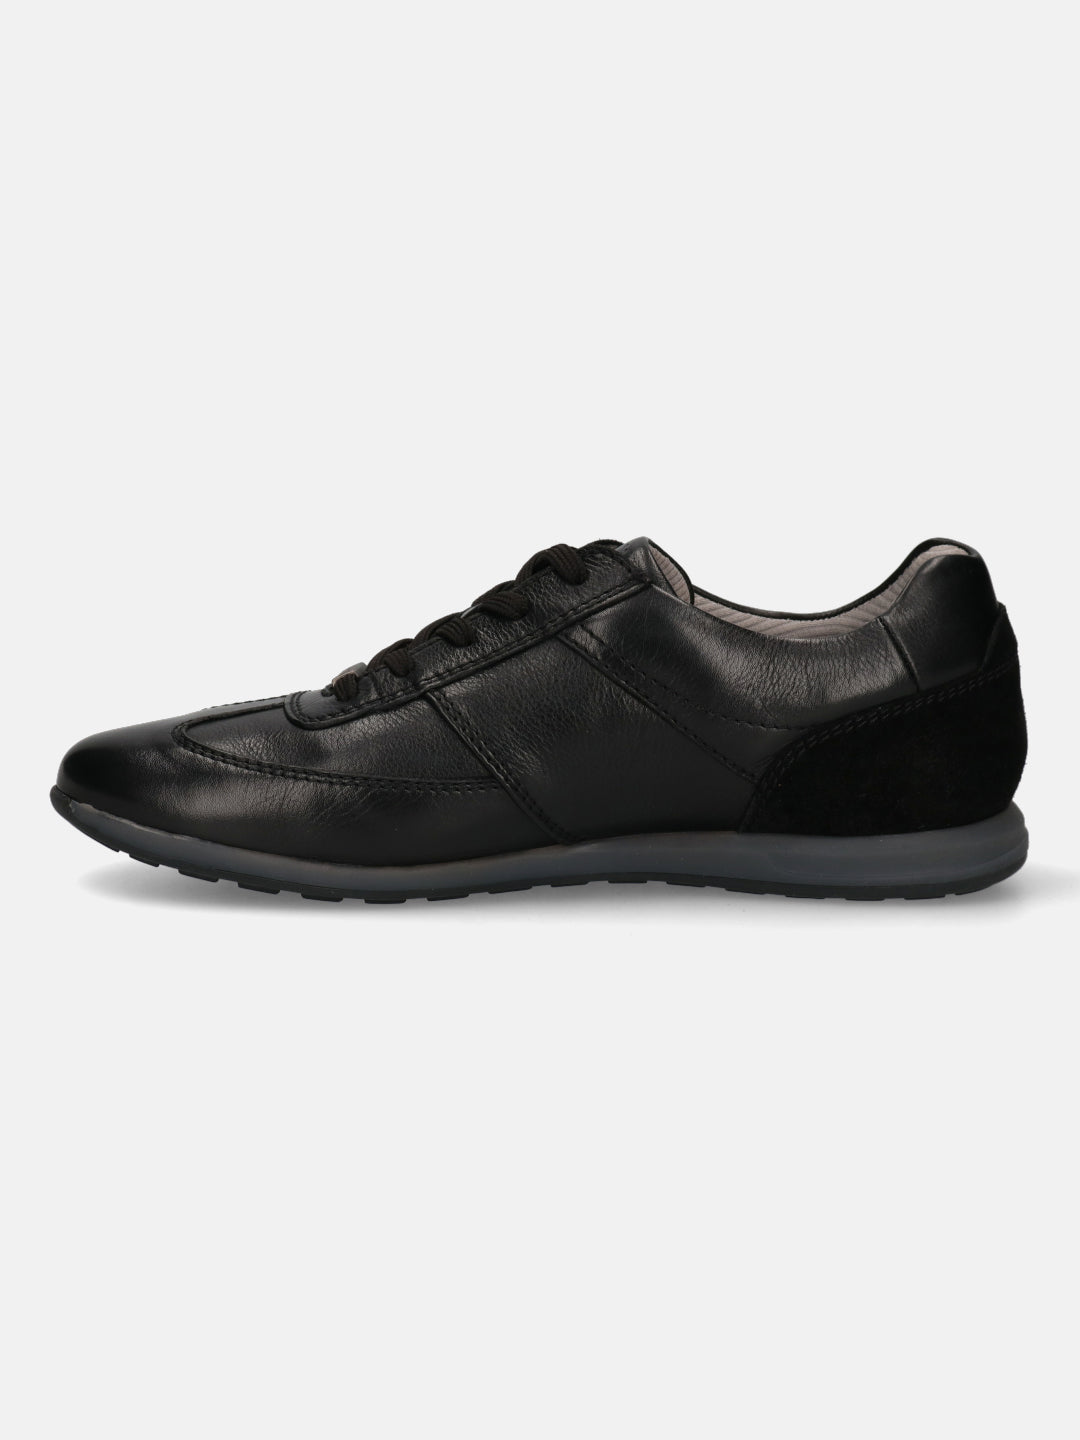 Thorello Black Sneakers - Bugatti Shoes – bugatti Shoes India